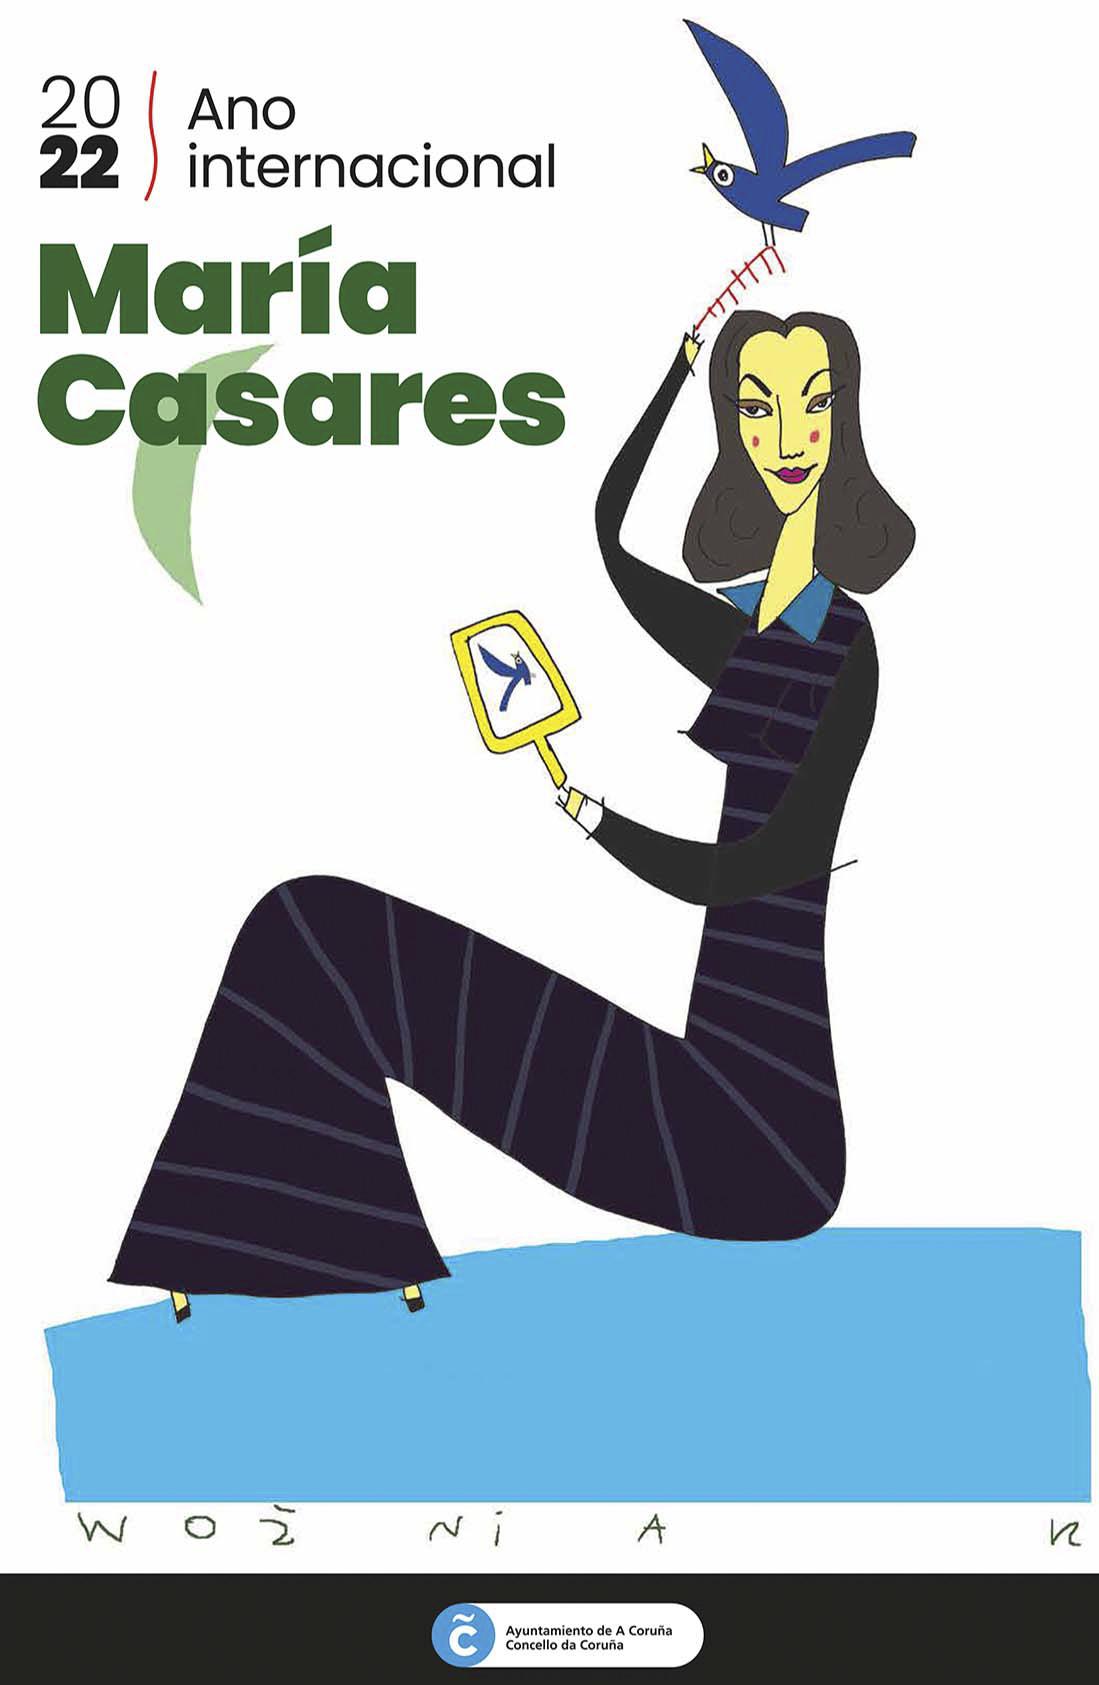 El cartel del Año Internacional María Casares, obra del ilustrador Wozniak.